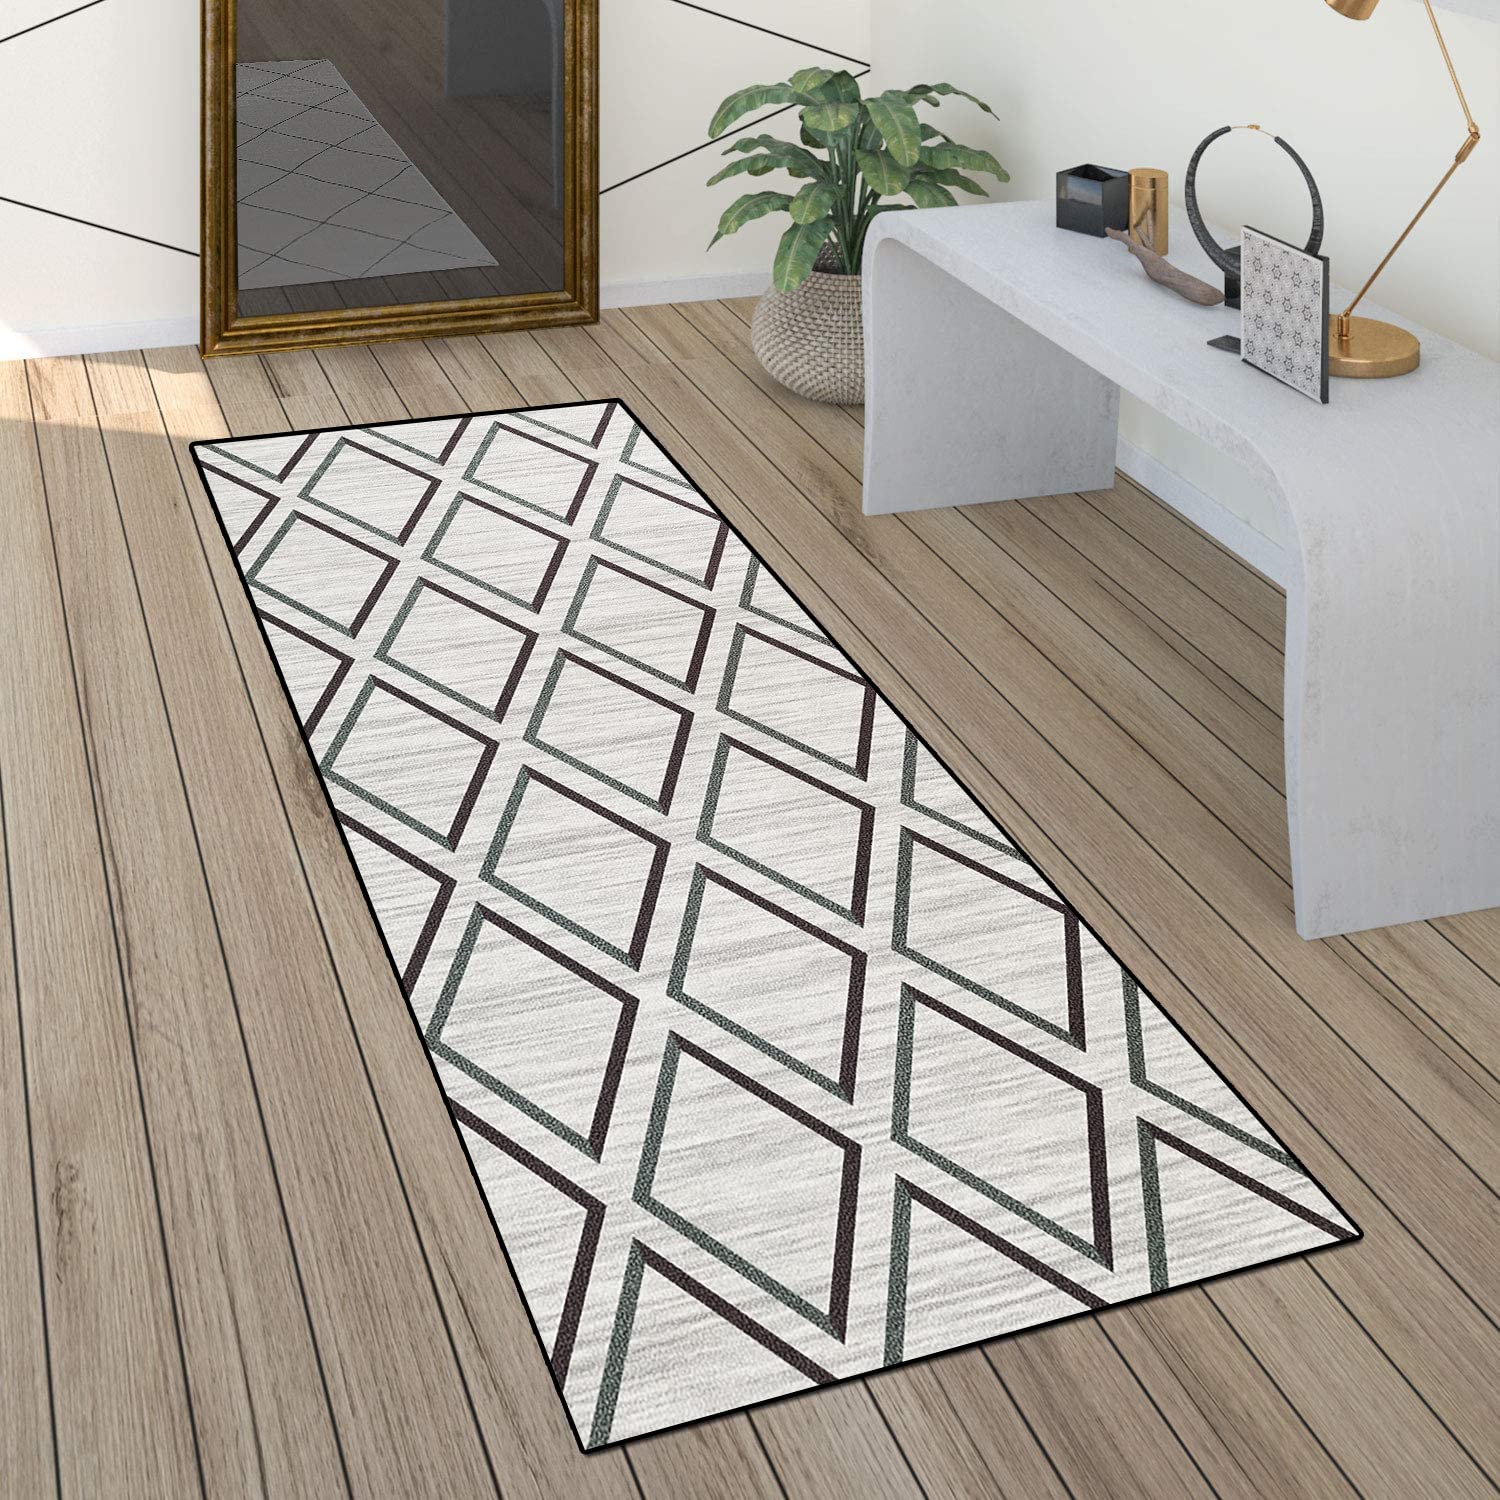 ACUY Rutschfester Teppich 70x100cm LäUfer Teppiche Flur Verwischt Meliert Design Geruchsneutral für Küche Schlafzimmer Wohnzimmer